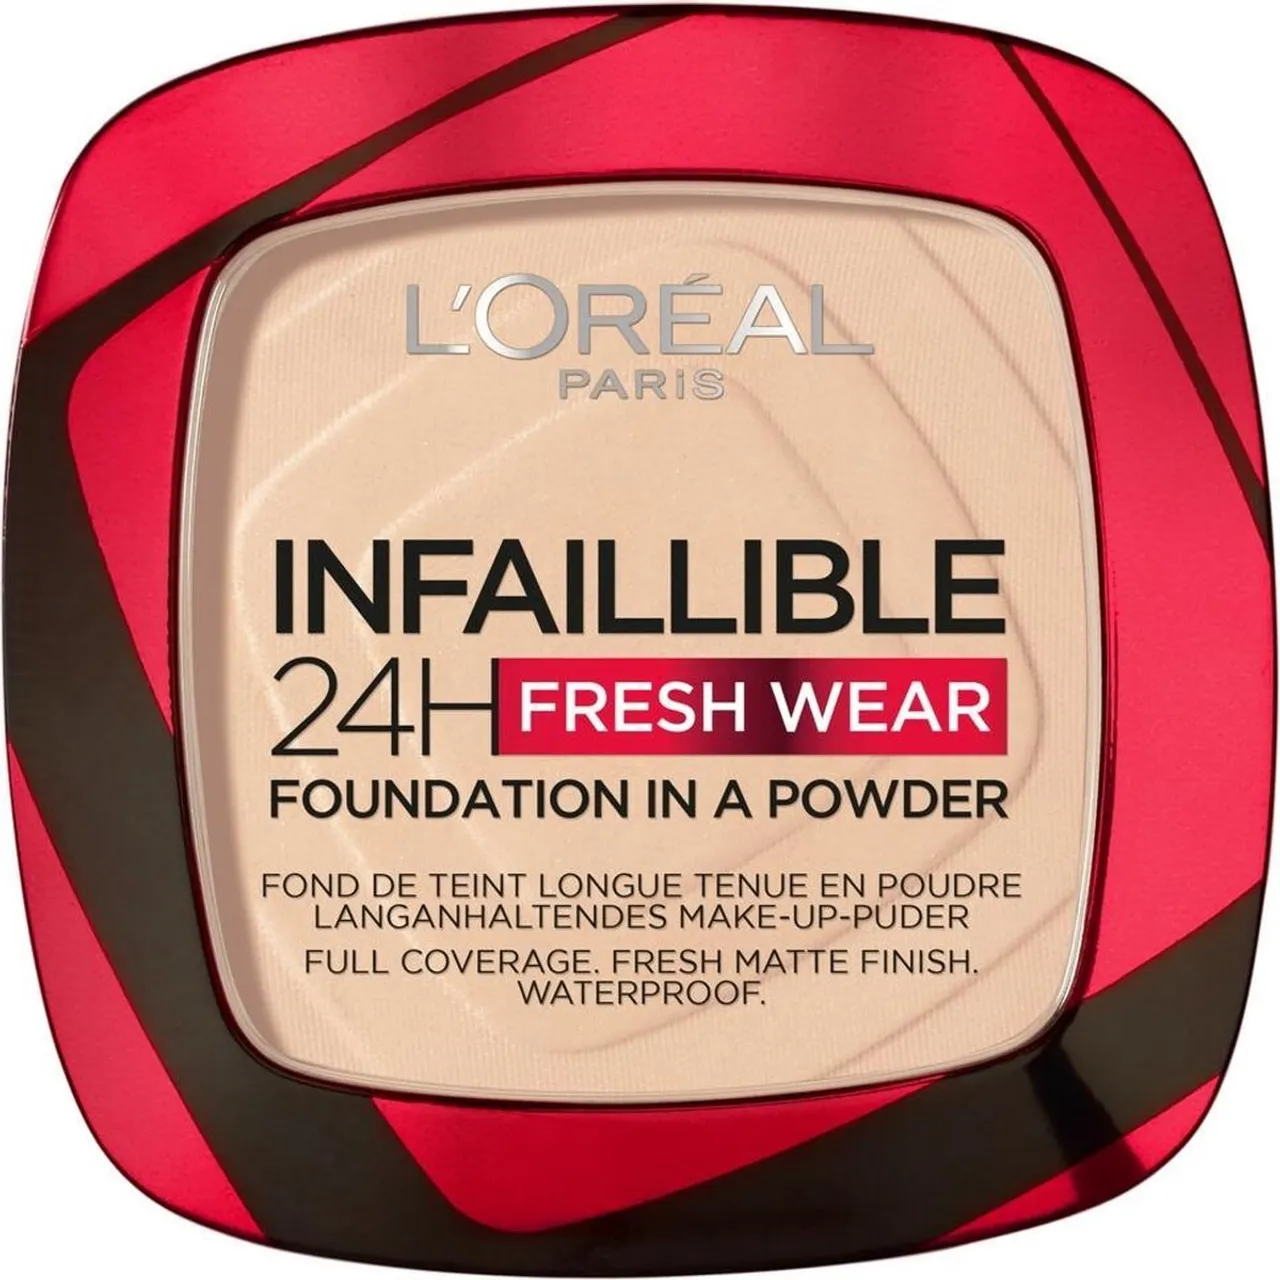 L'Oréal Paris - Infaillible 24H Fresh Wear Foundation in a Powder - 20 Ivory - Foundation en poeder - 8gr